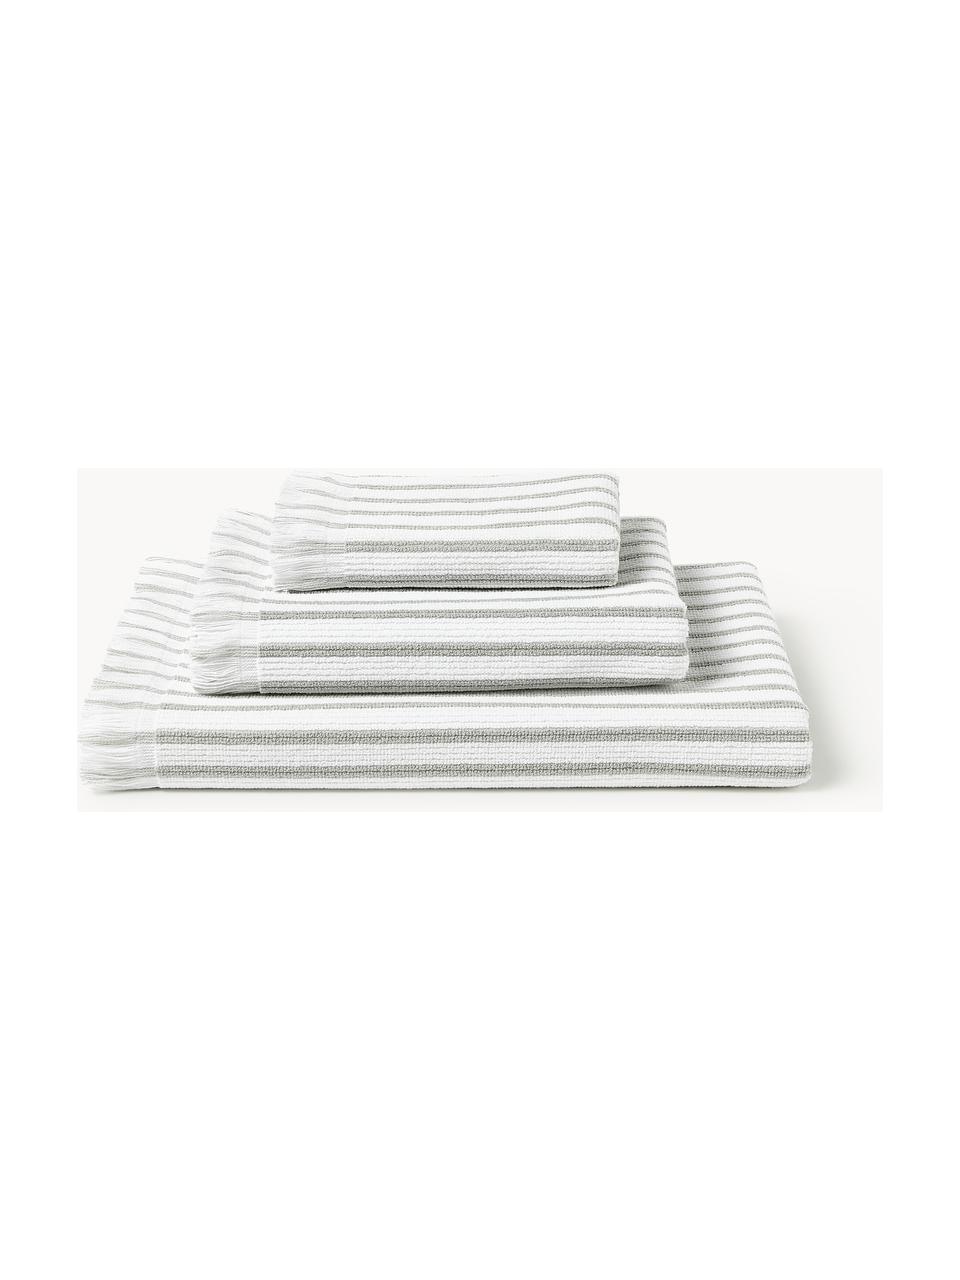 Komplet ręczników Irma, różne rozmiary, Biały, jasny szary, 4 elem. (ręcznik do rąk, ręcznik kąpielowy)